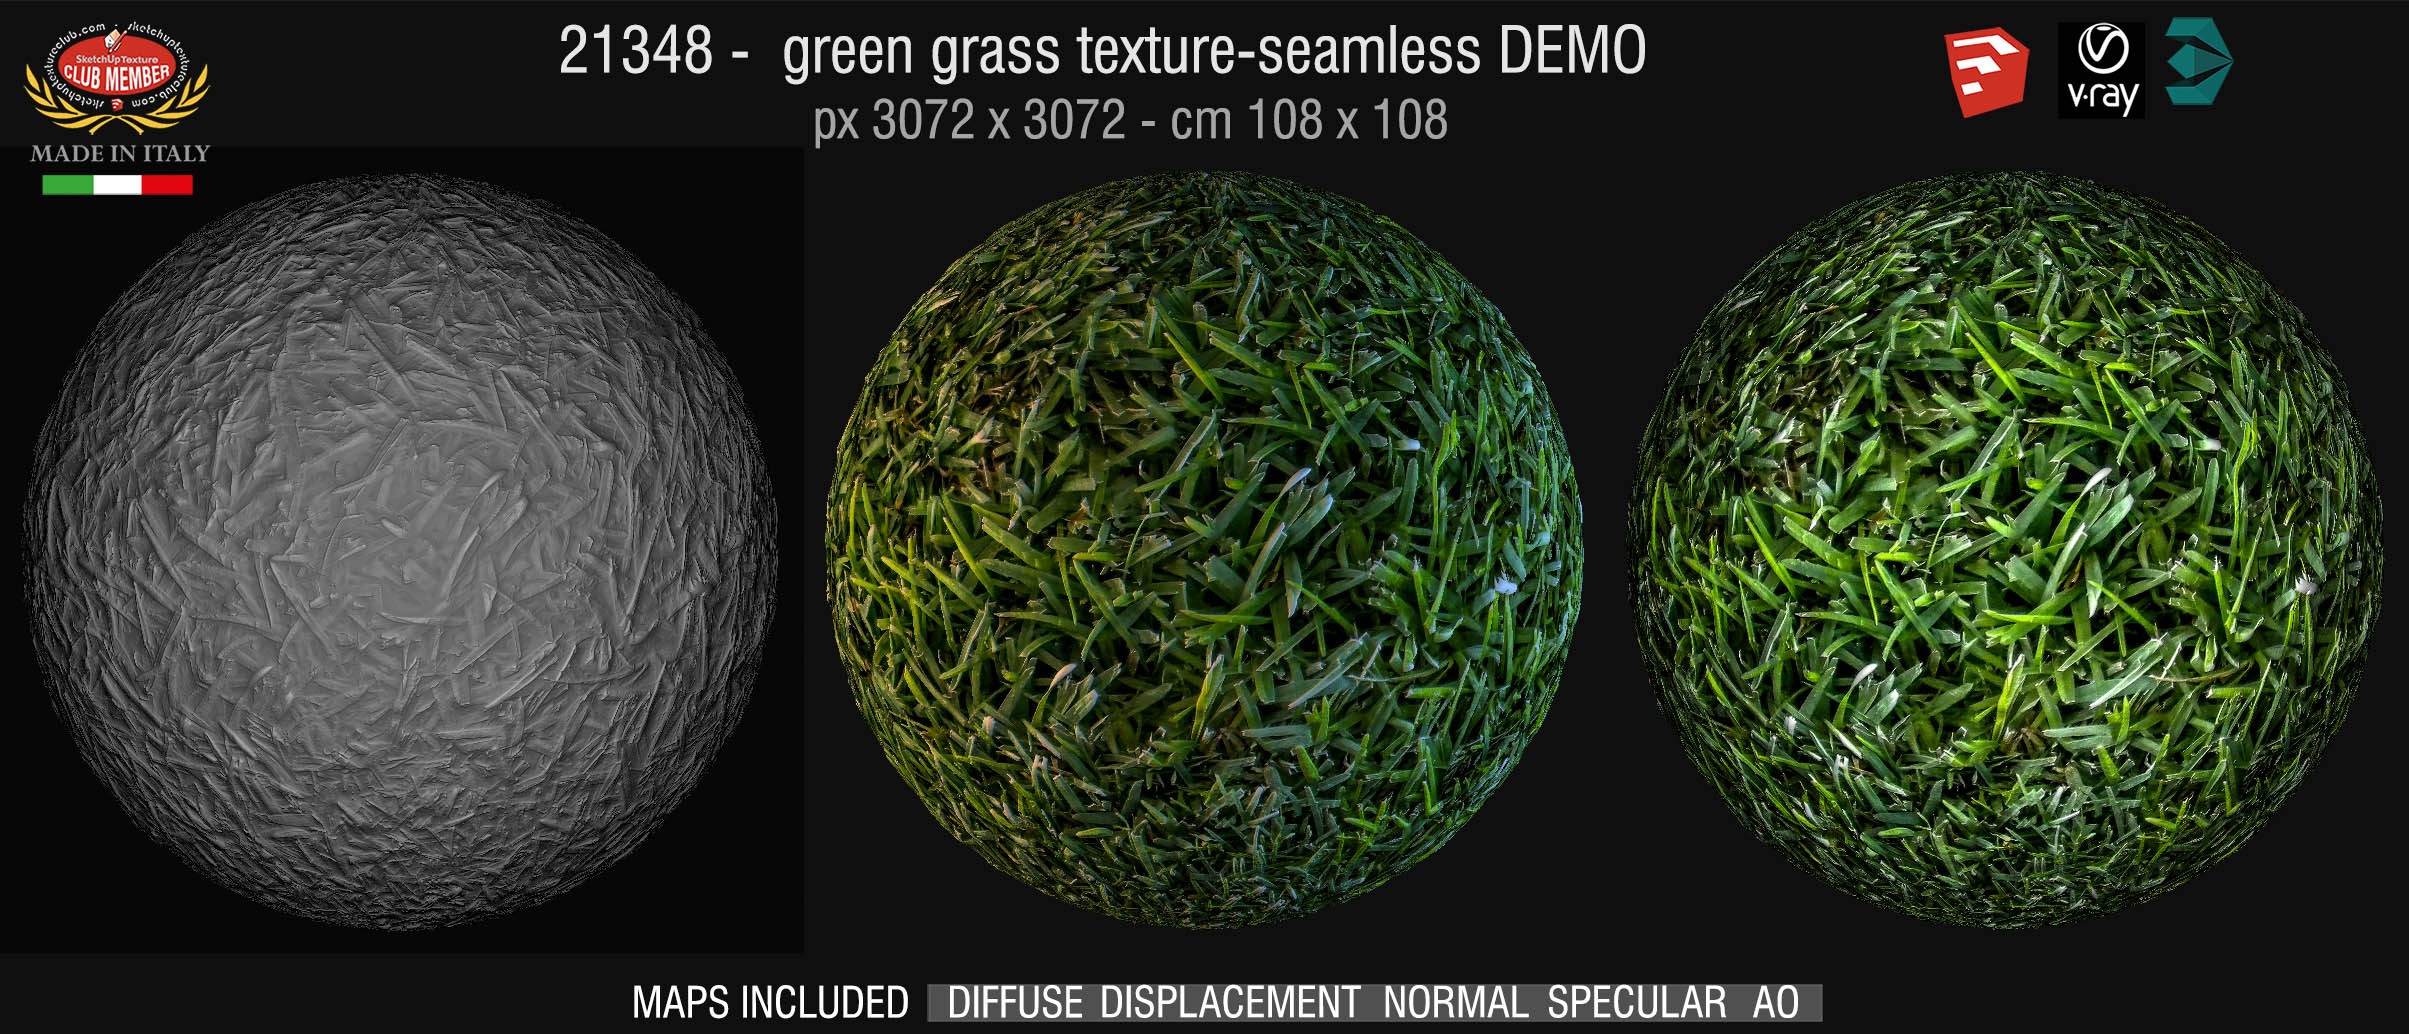 21348 HR green grass texture seamless + maps DEMO